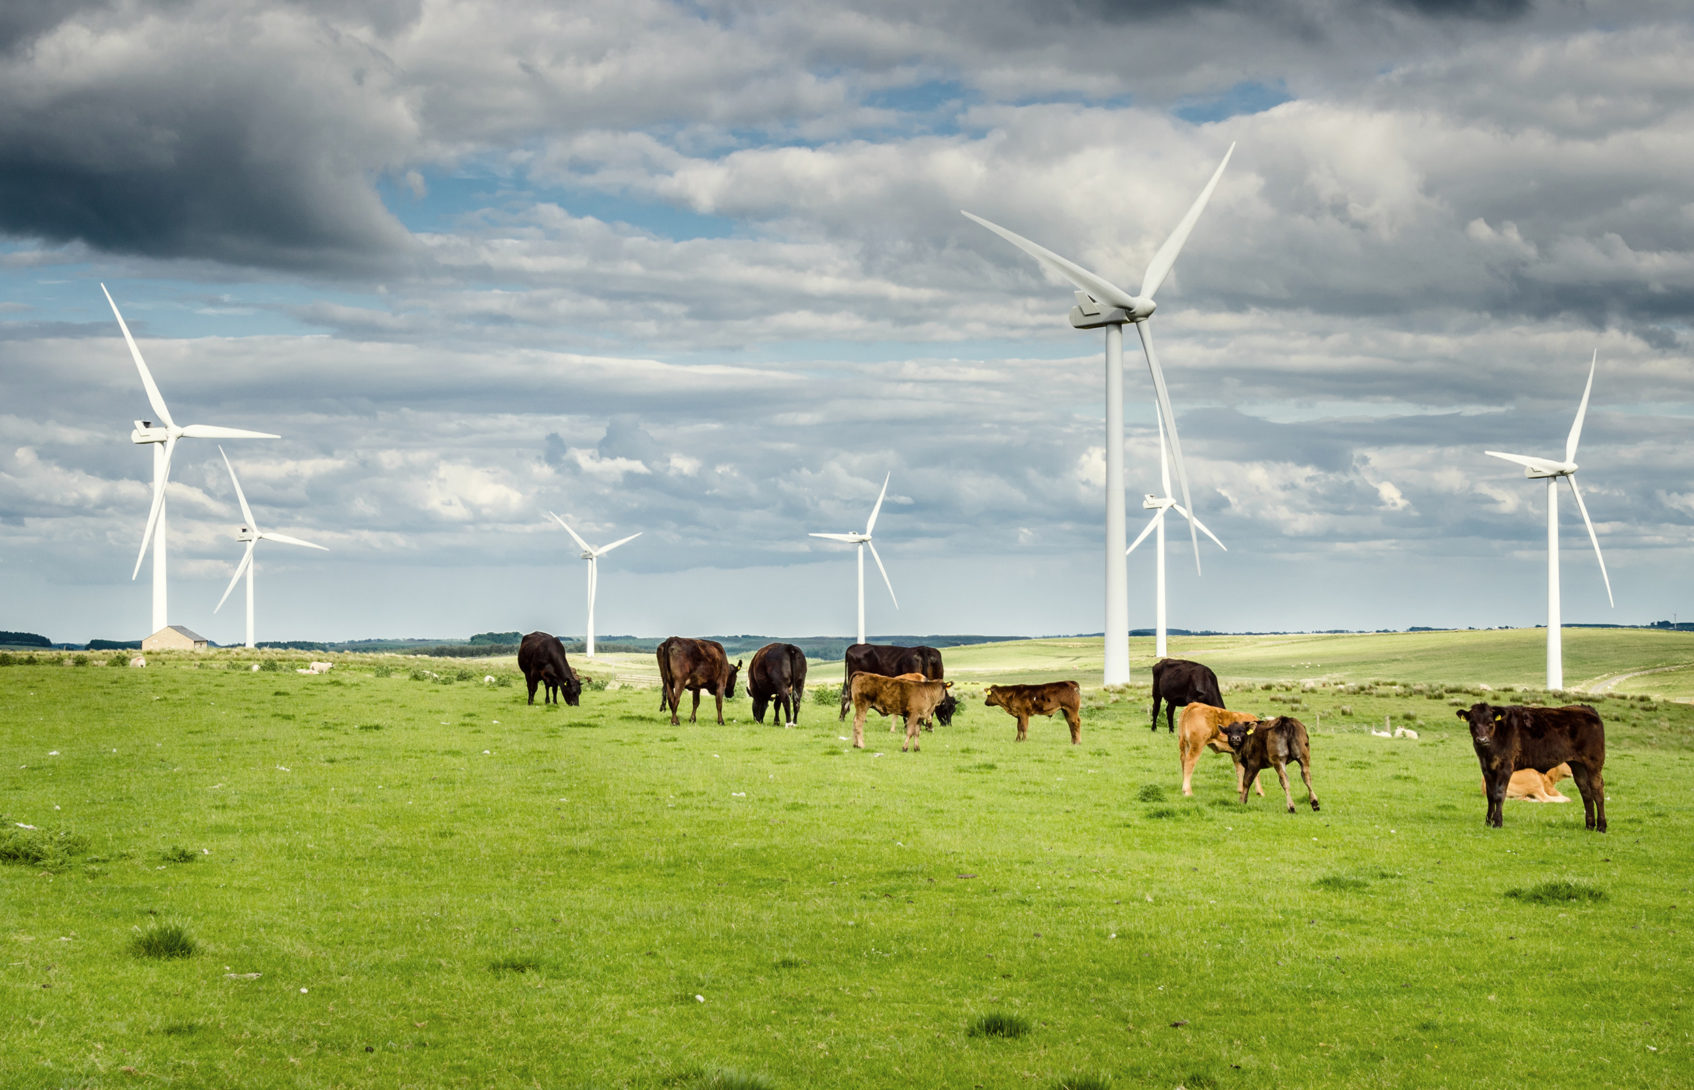 Cows graze near windmills